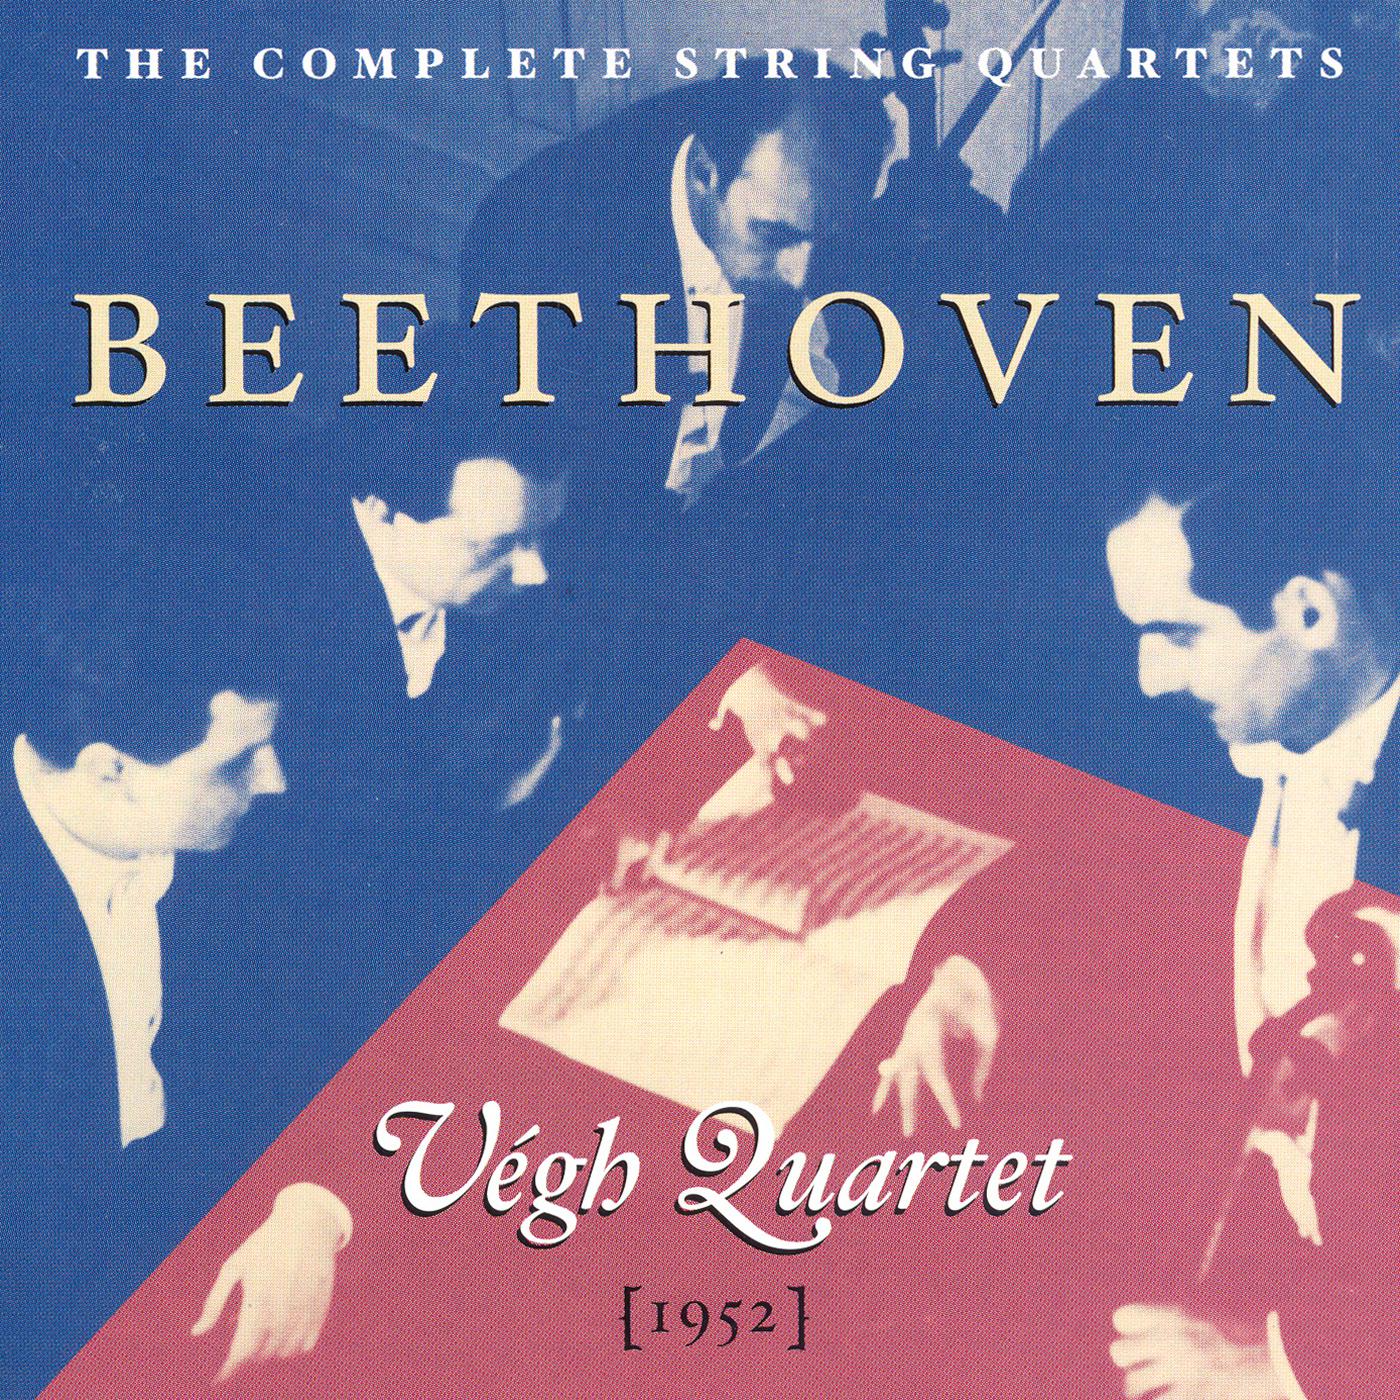 BEETHOVEN: String Quartets Nos. 1-16 (Complete) (Vegh Quartet) (1952)